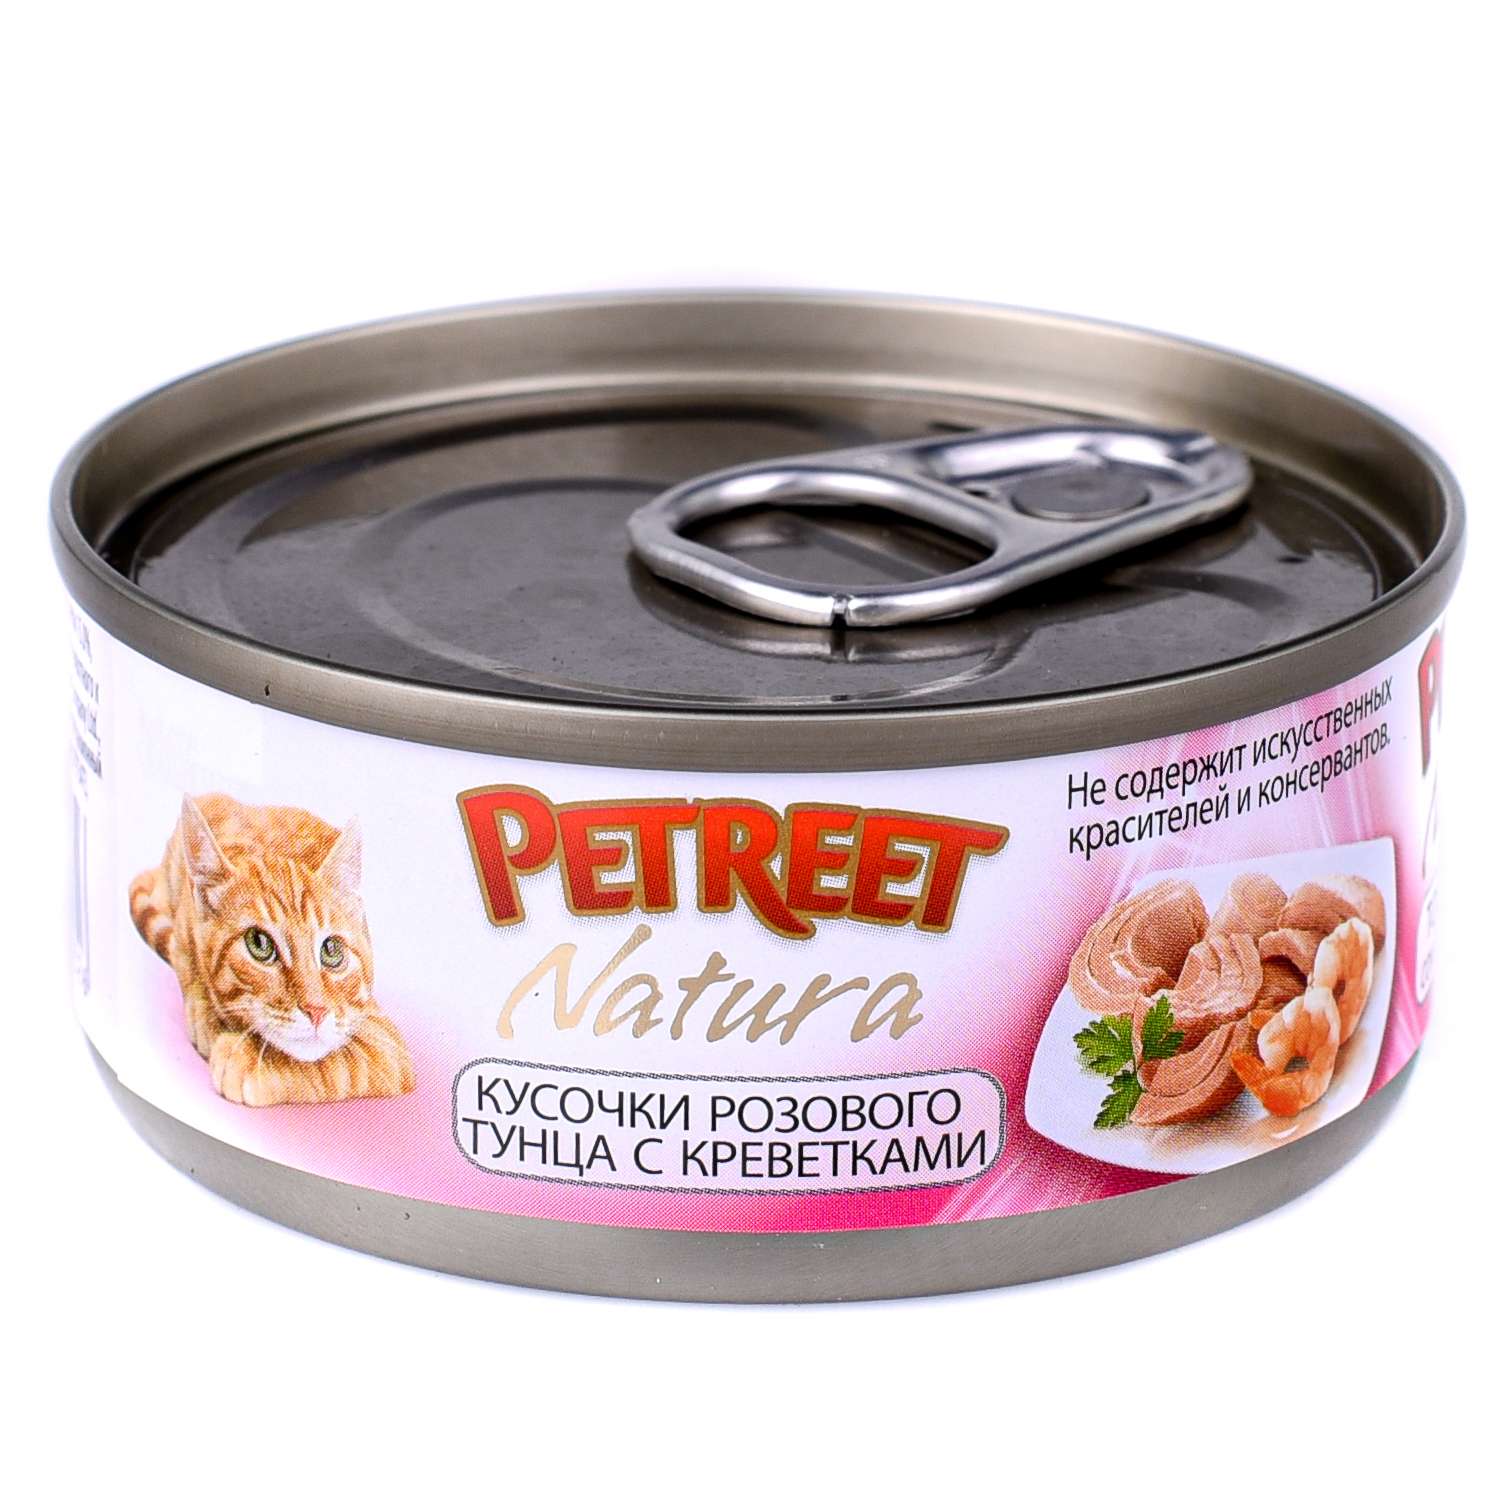 Корм влажный для кошек Petreet 70г кусочки розового тунца с креветками консервированный - фото 2